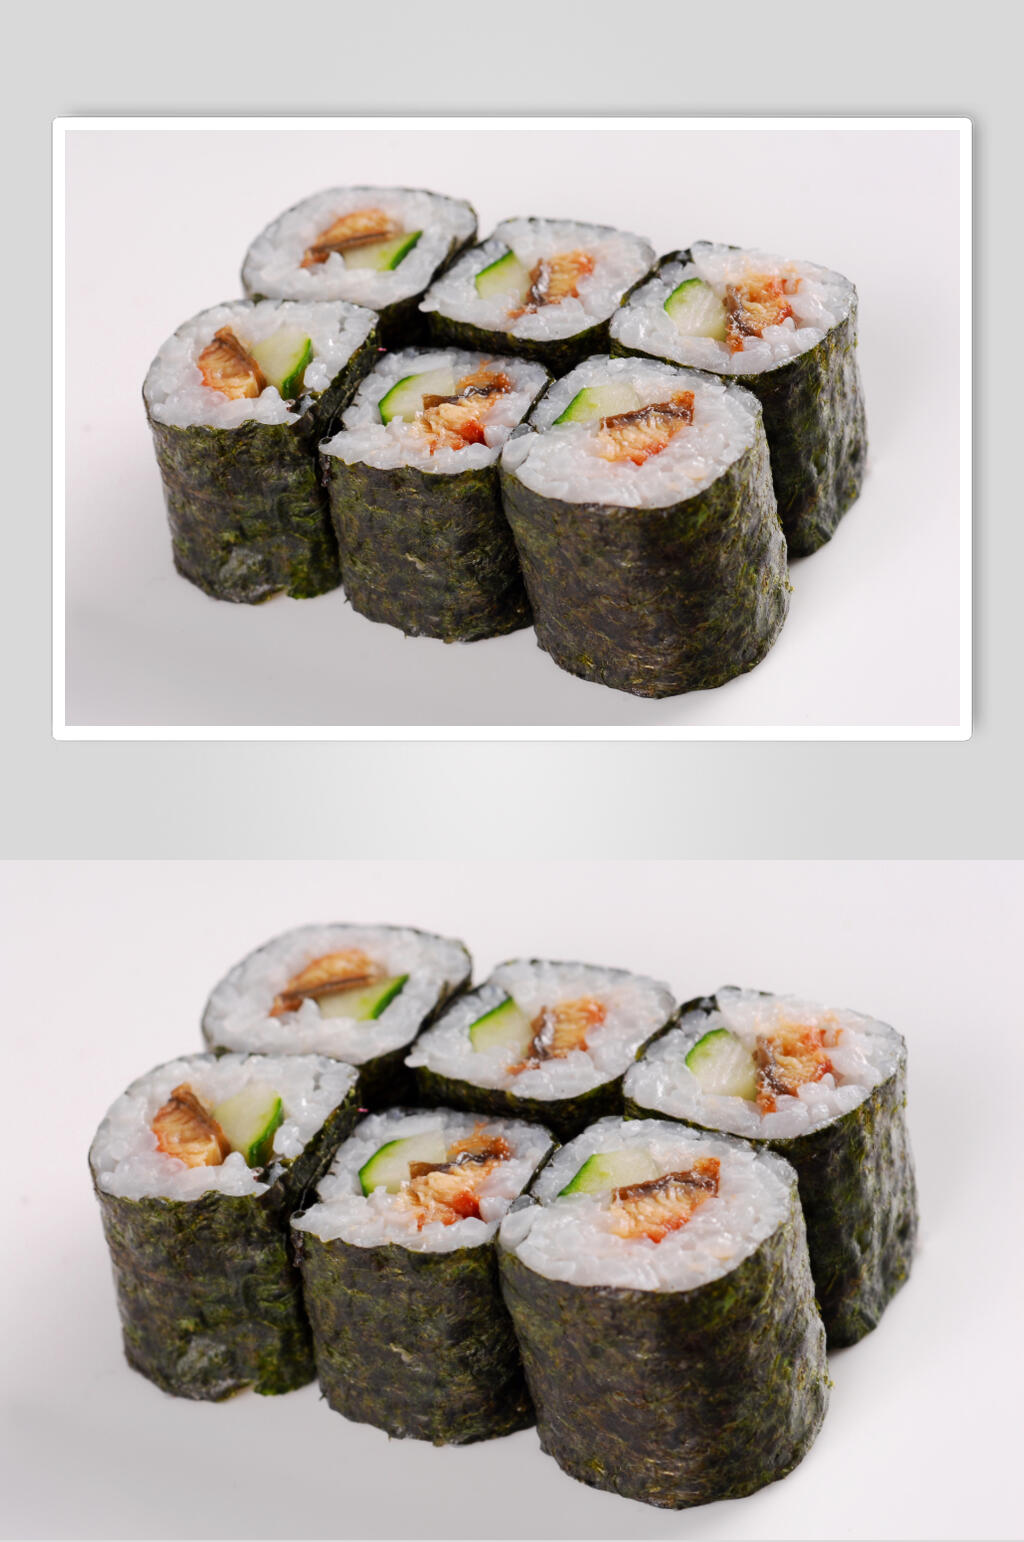 日本鳗鱼寿司卷美食图片立即下载芝麻鳗鱼卷立即下载鳗